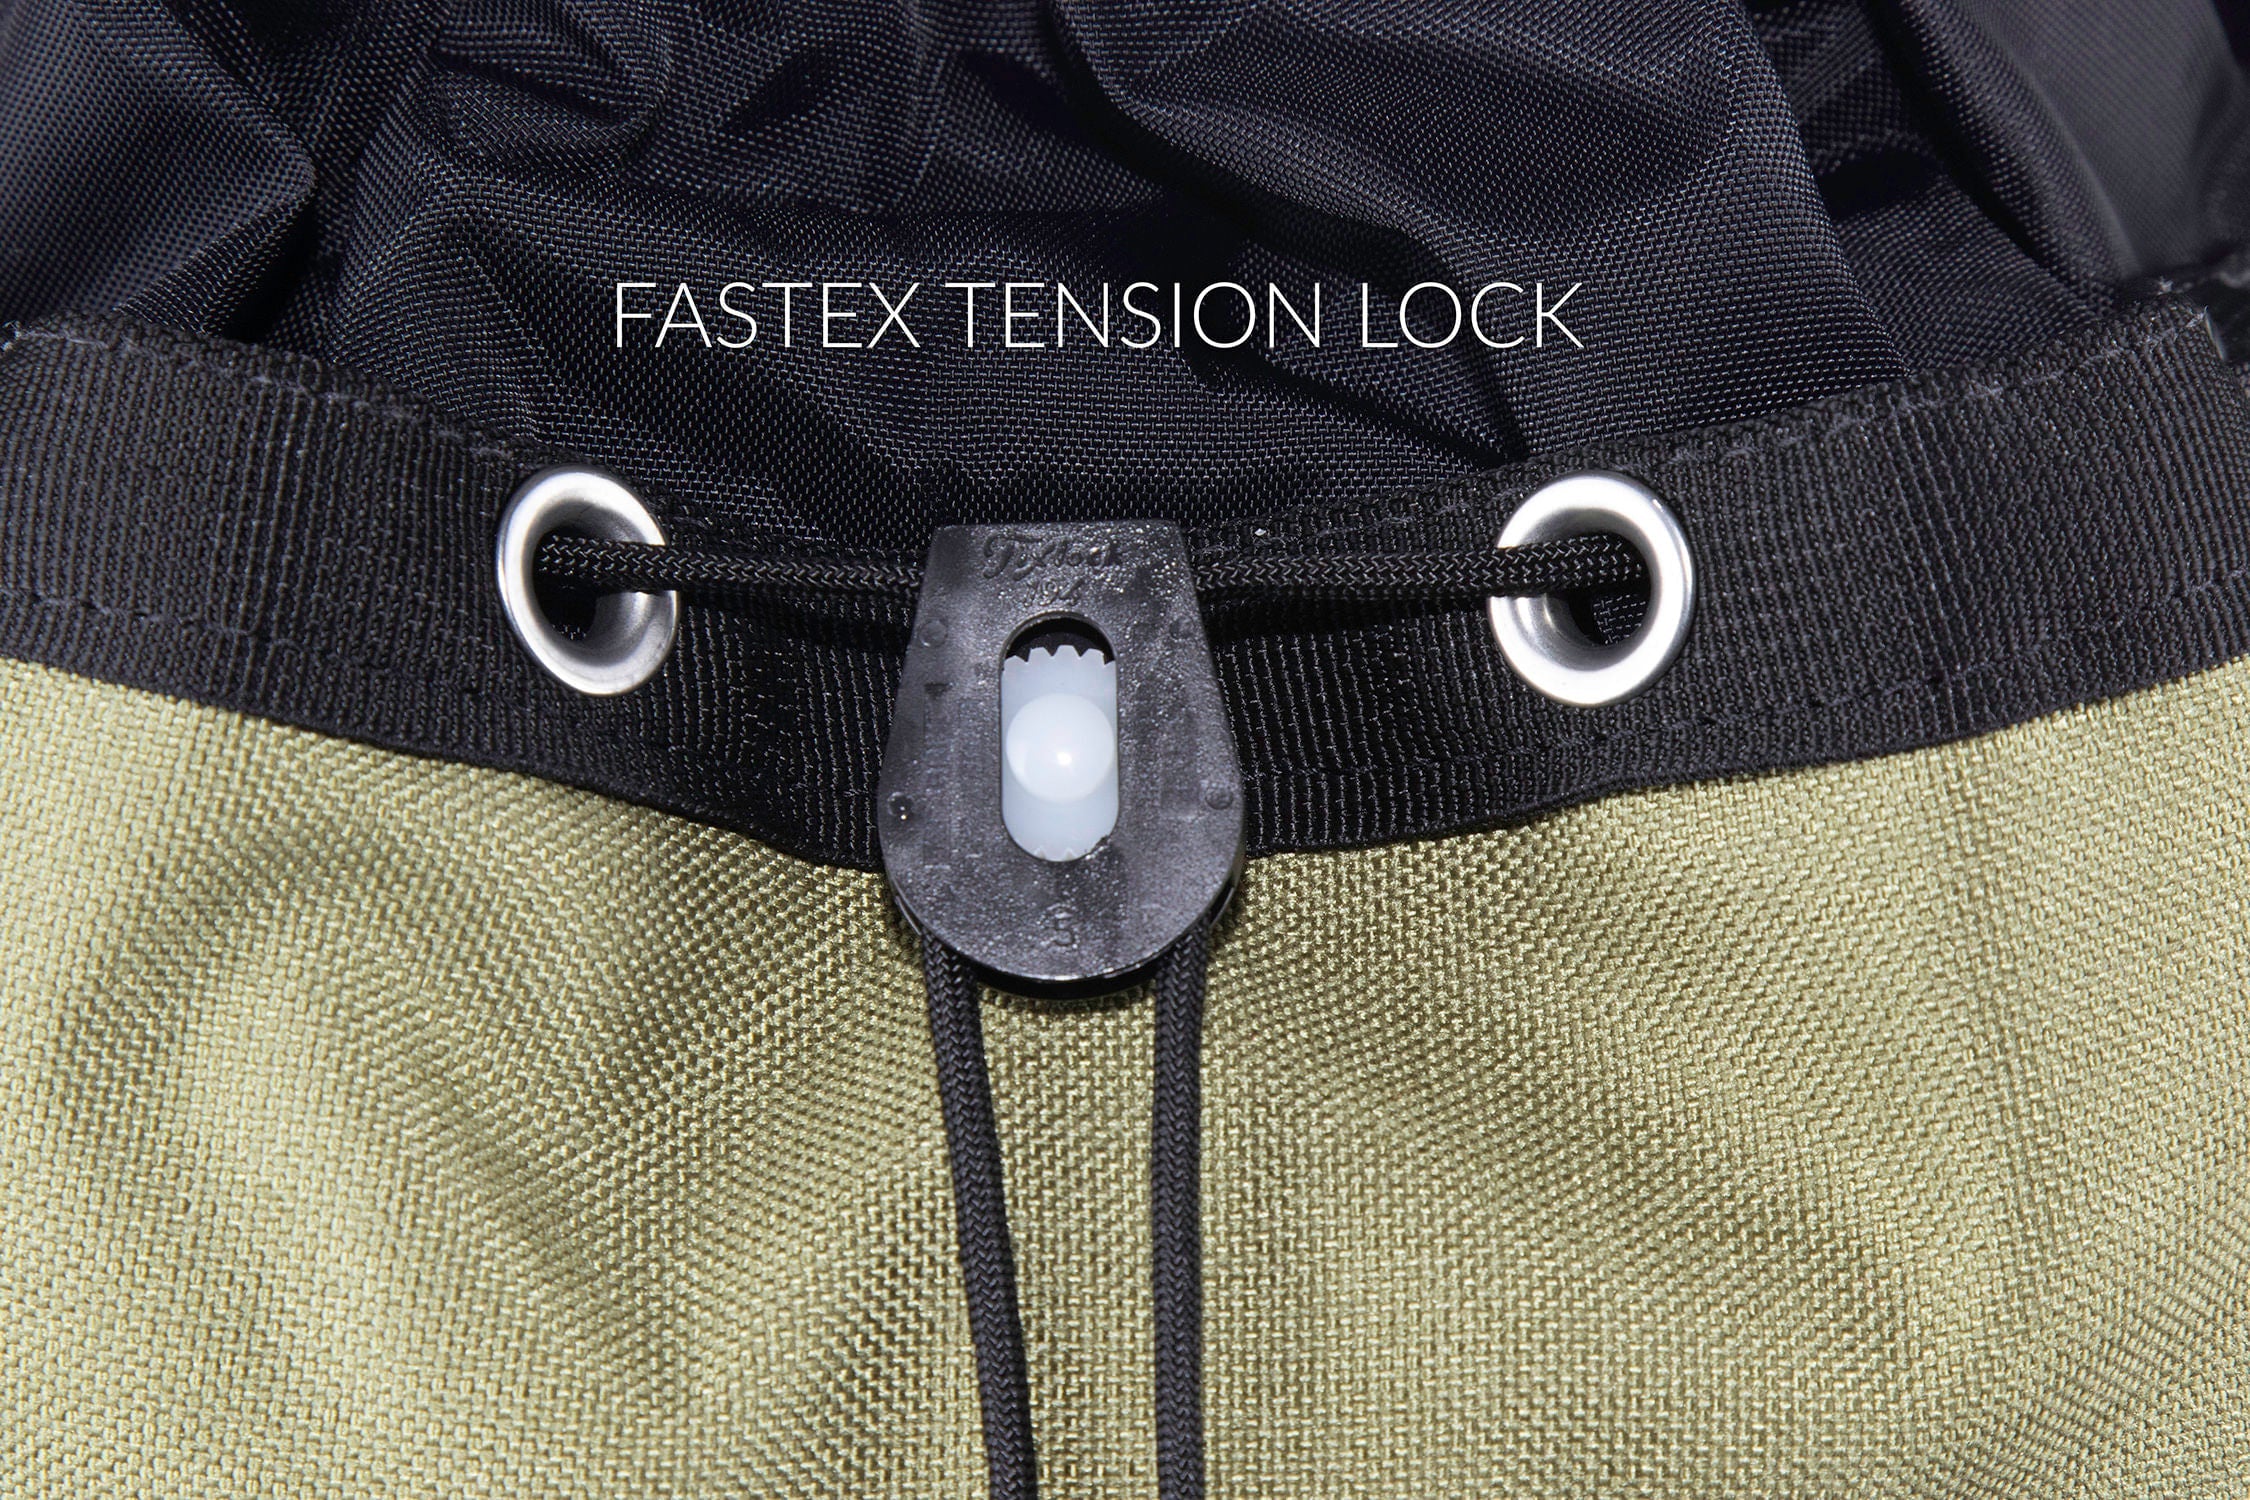 Fastex tension lock